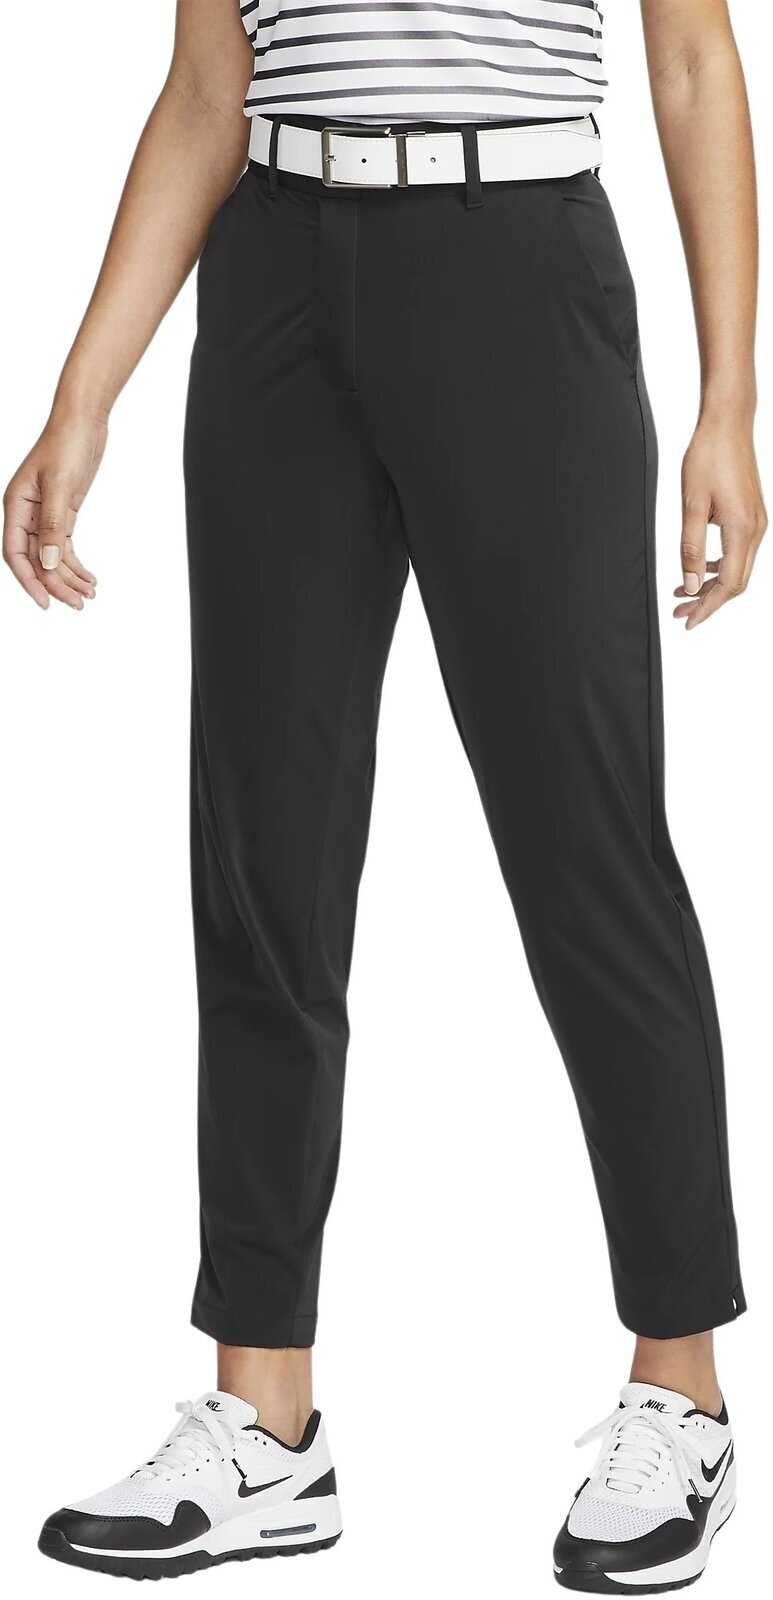 Spodnie Nike Dri-Fit Tour Womens Pants Black/White L